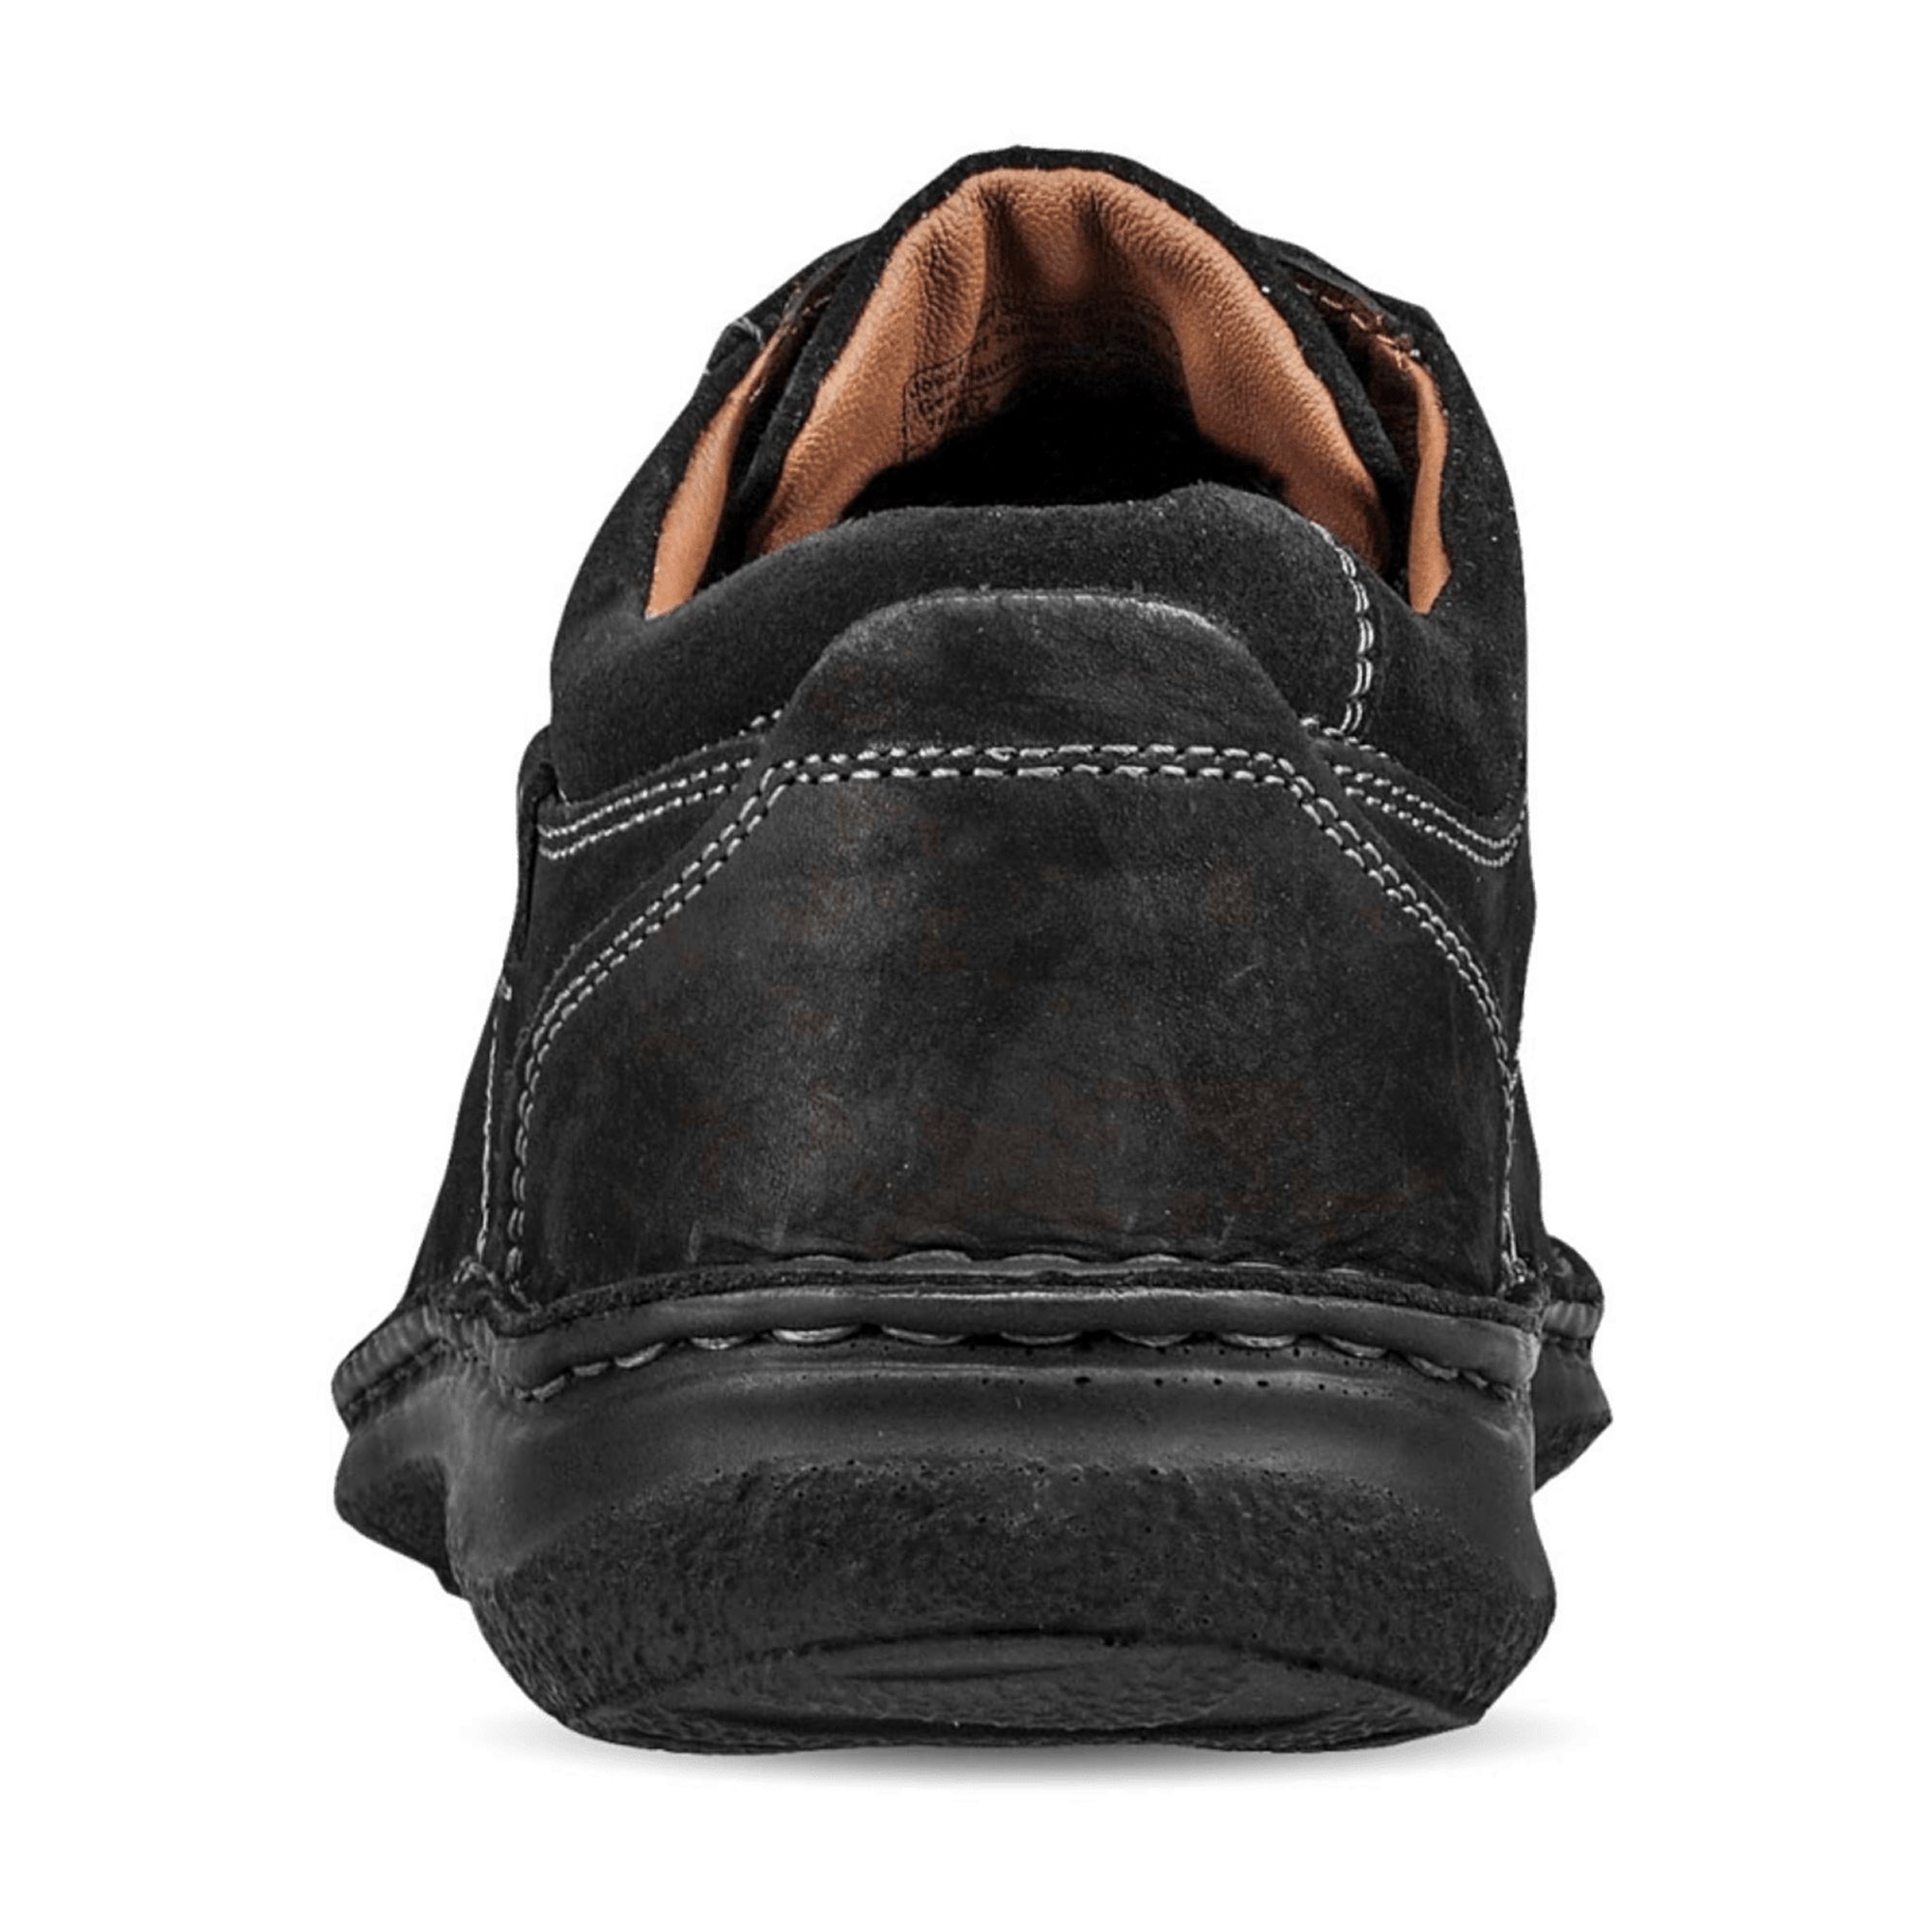 Josef Seibel Anvers 36 Men's Shoes in Black